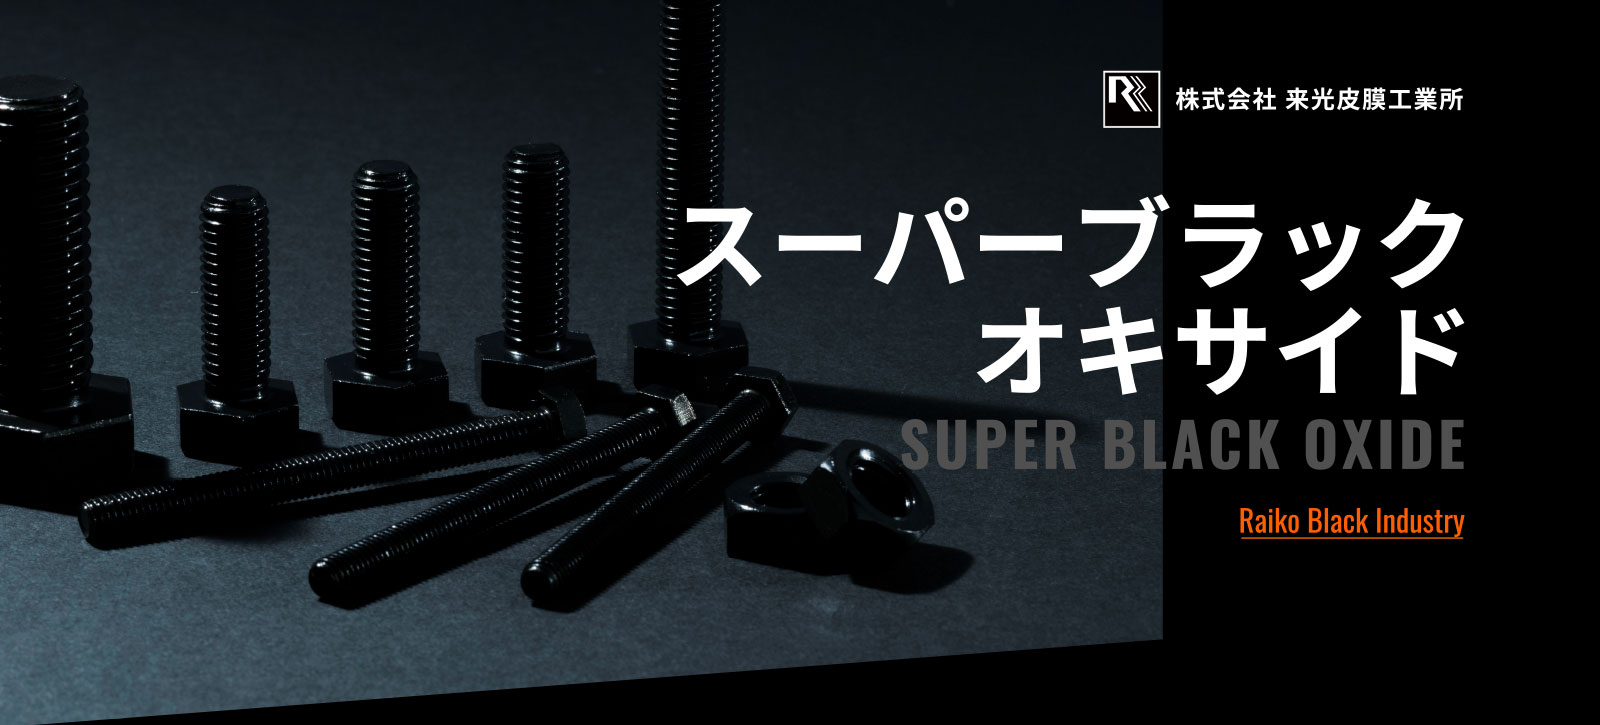 スーパーブラックオキサイド SUPER BLACK OXIDE